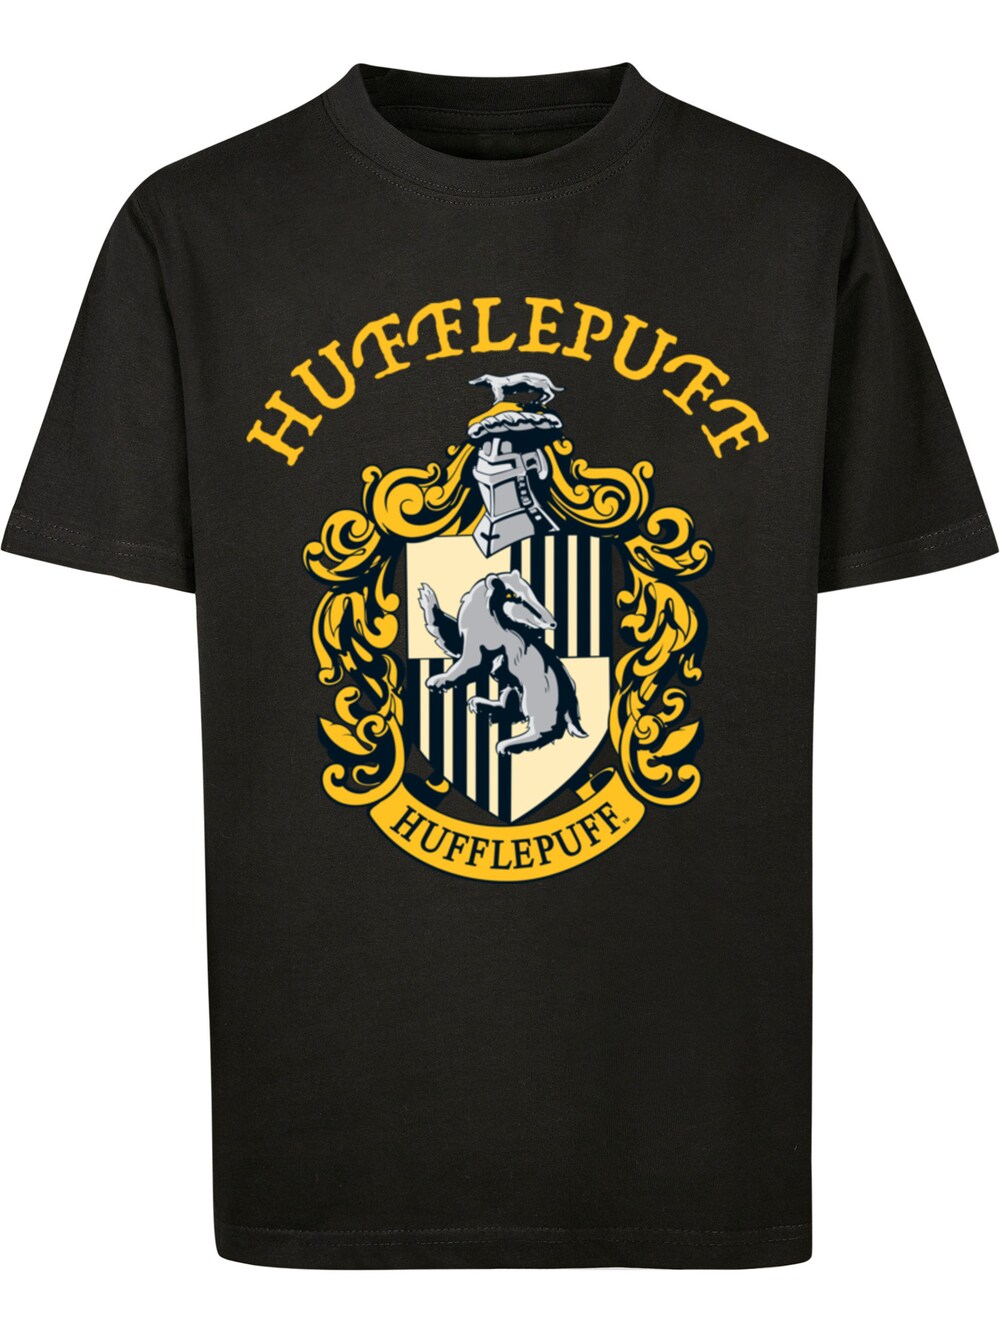 Футболка F4Nt4Stic Harry Potter Hufflepuff Crest, черный